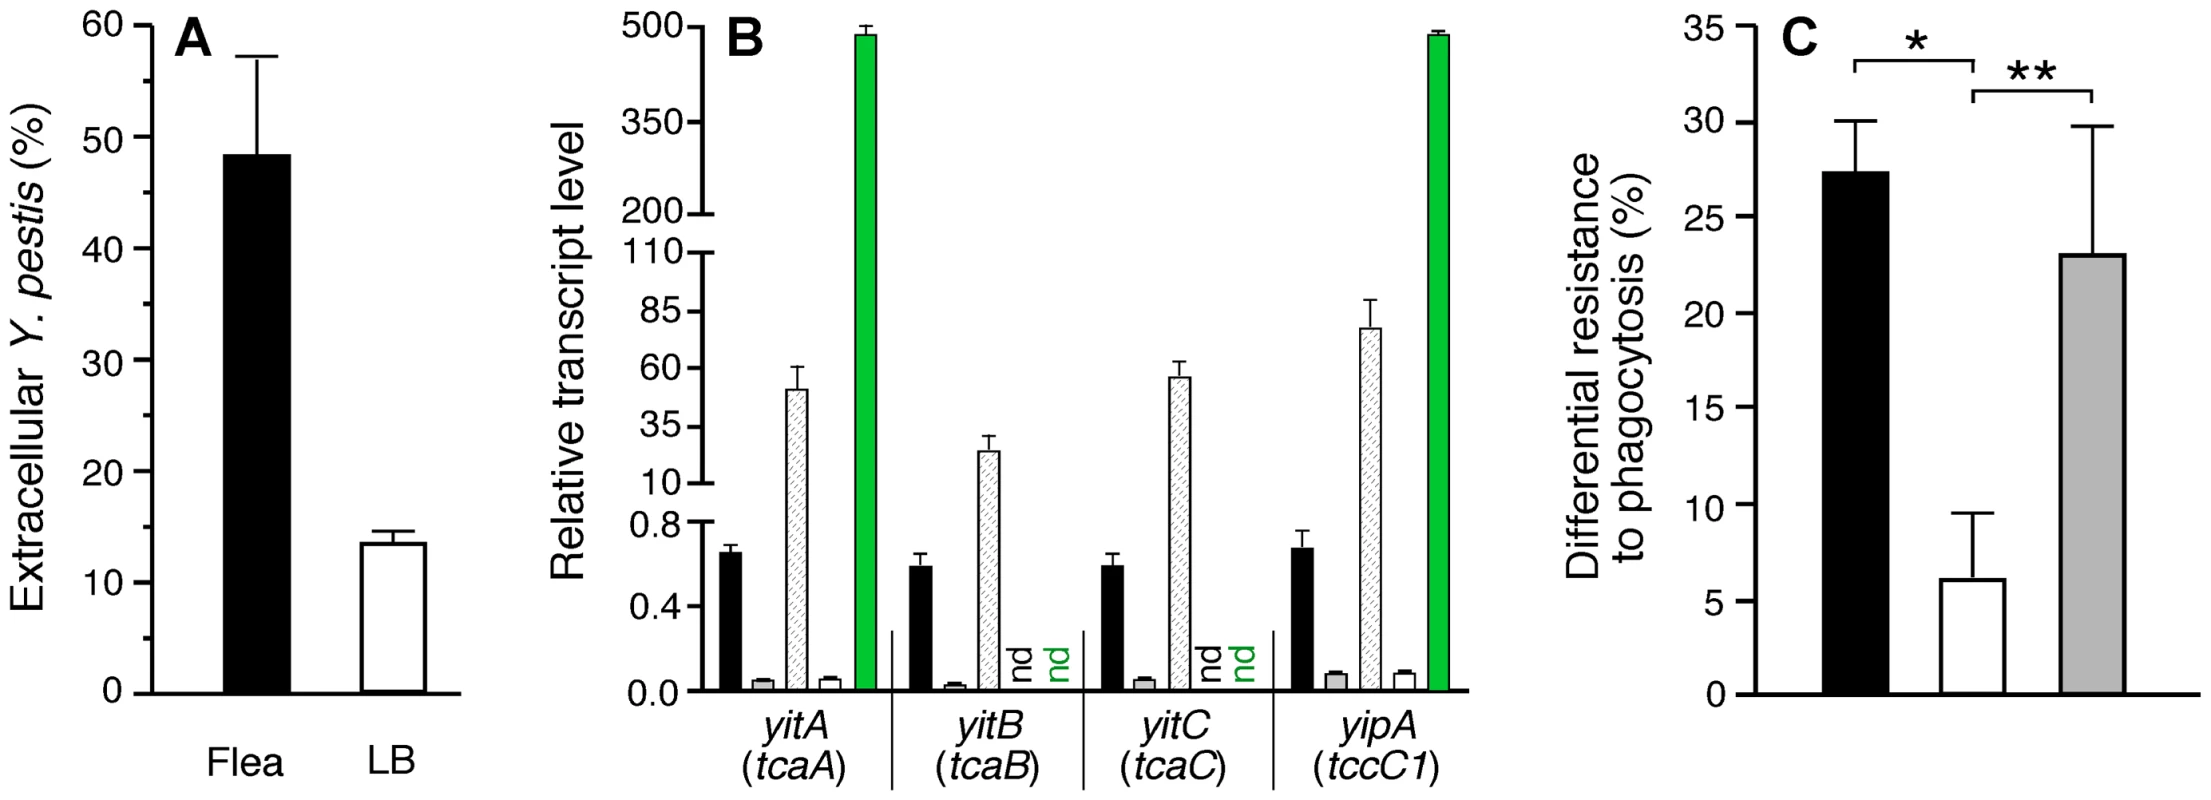 Phagocytosis-resistant phenotype of <i>Y. pestis</i> isolated from fleas correlates with expression level of the <i>yit</i>-<i>yip</i> insecticidal-like toxin genes.